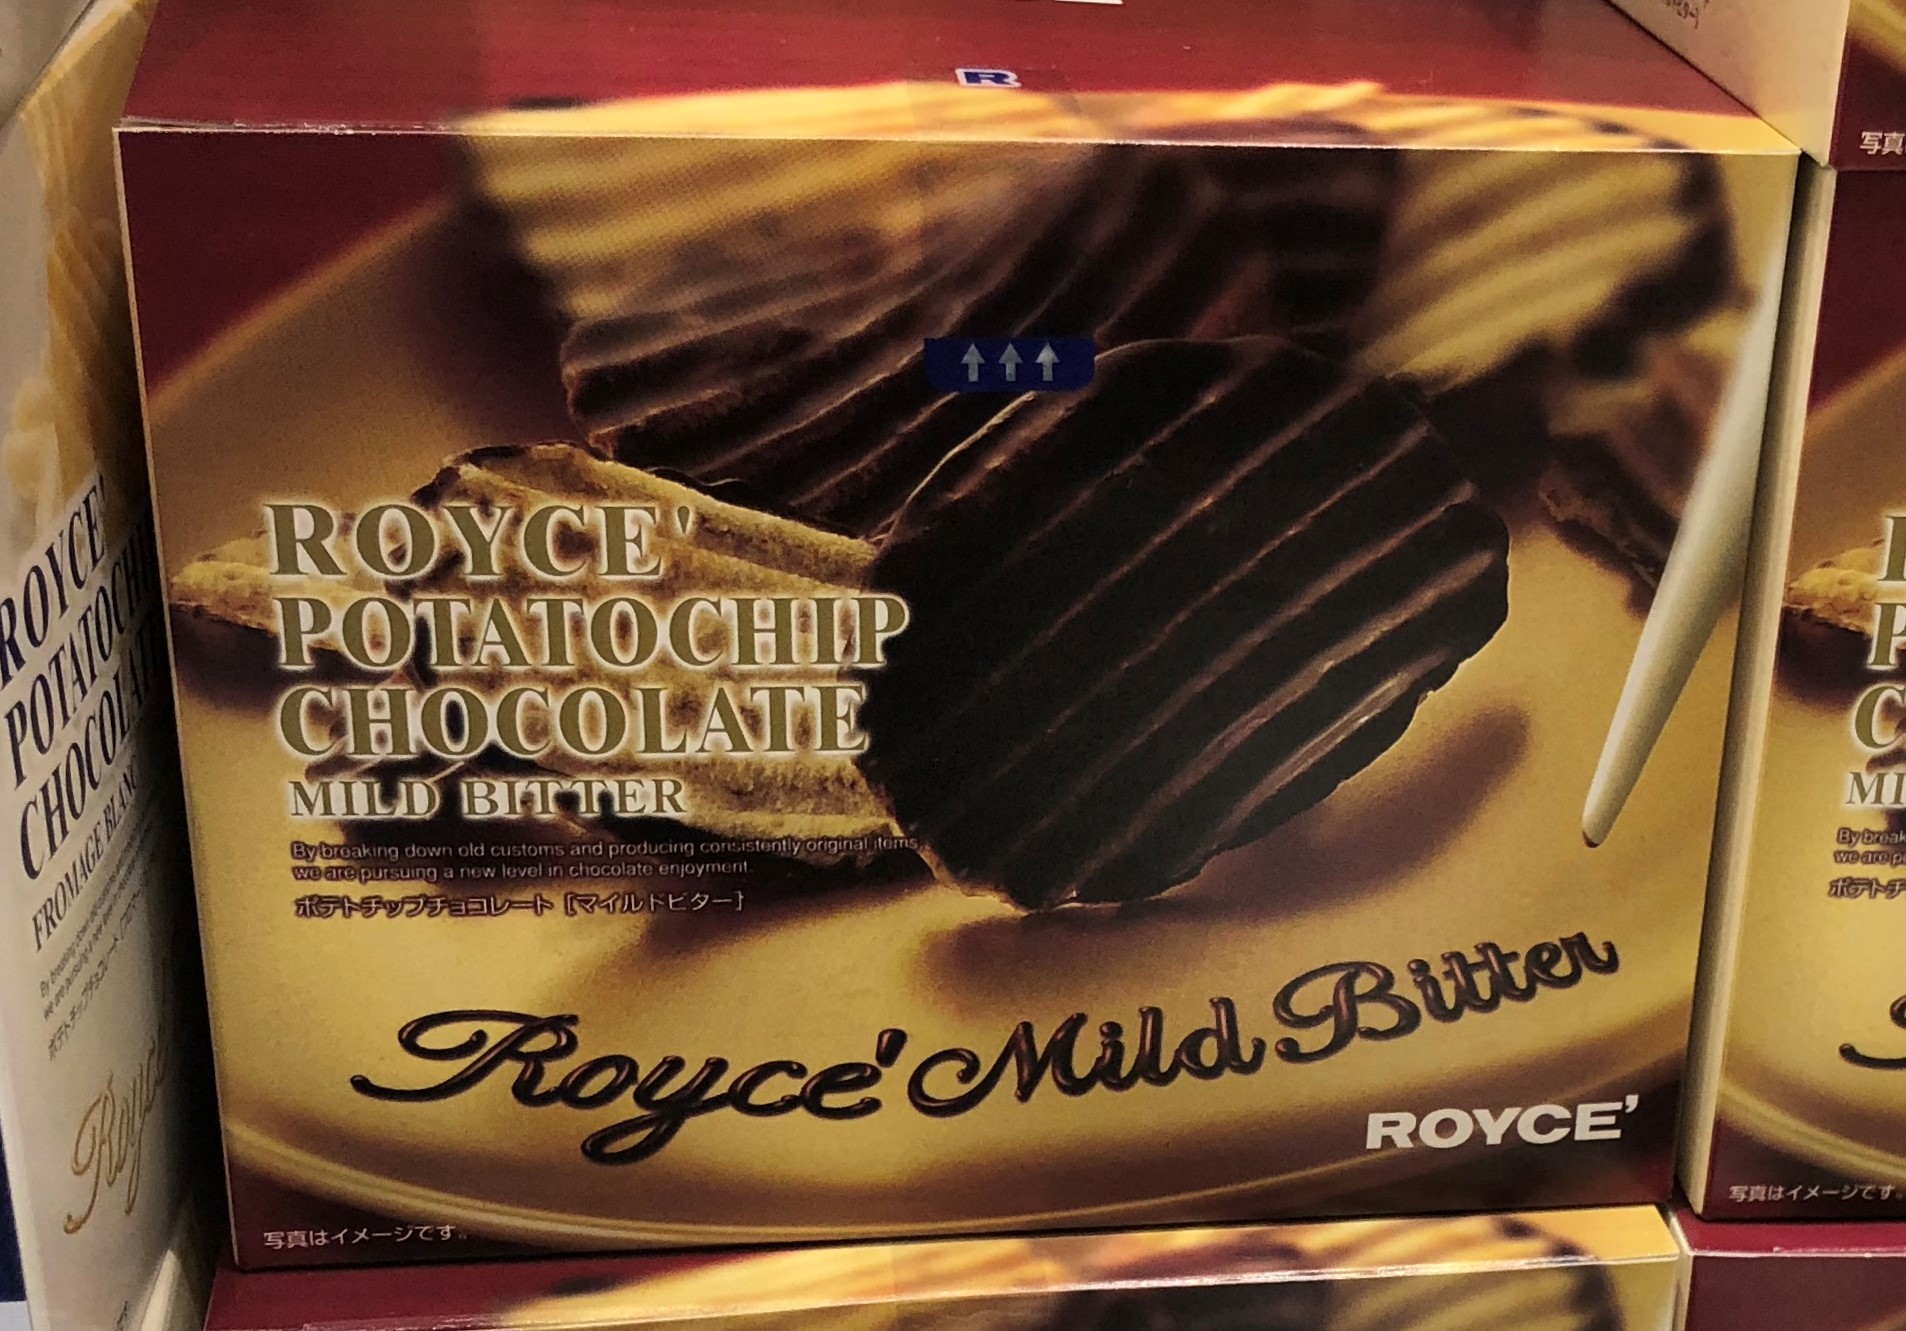 ポテトチップチョコレートの箱